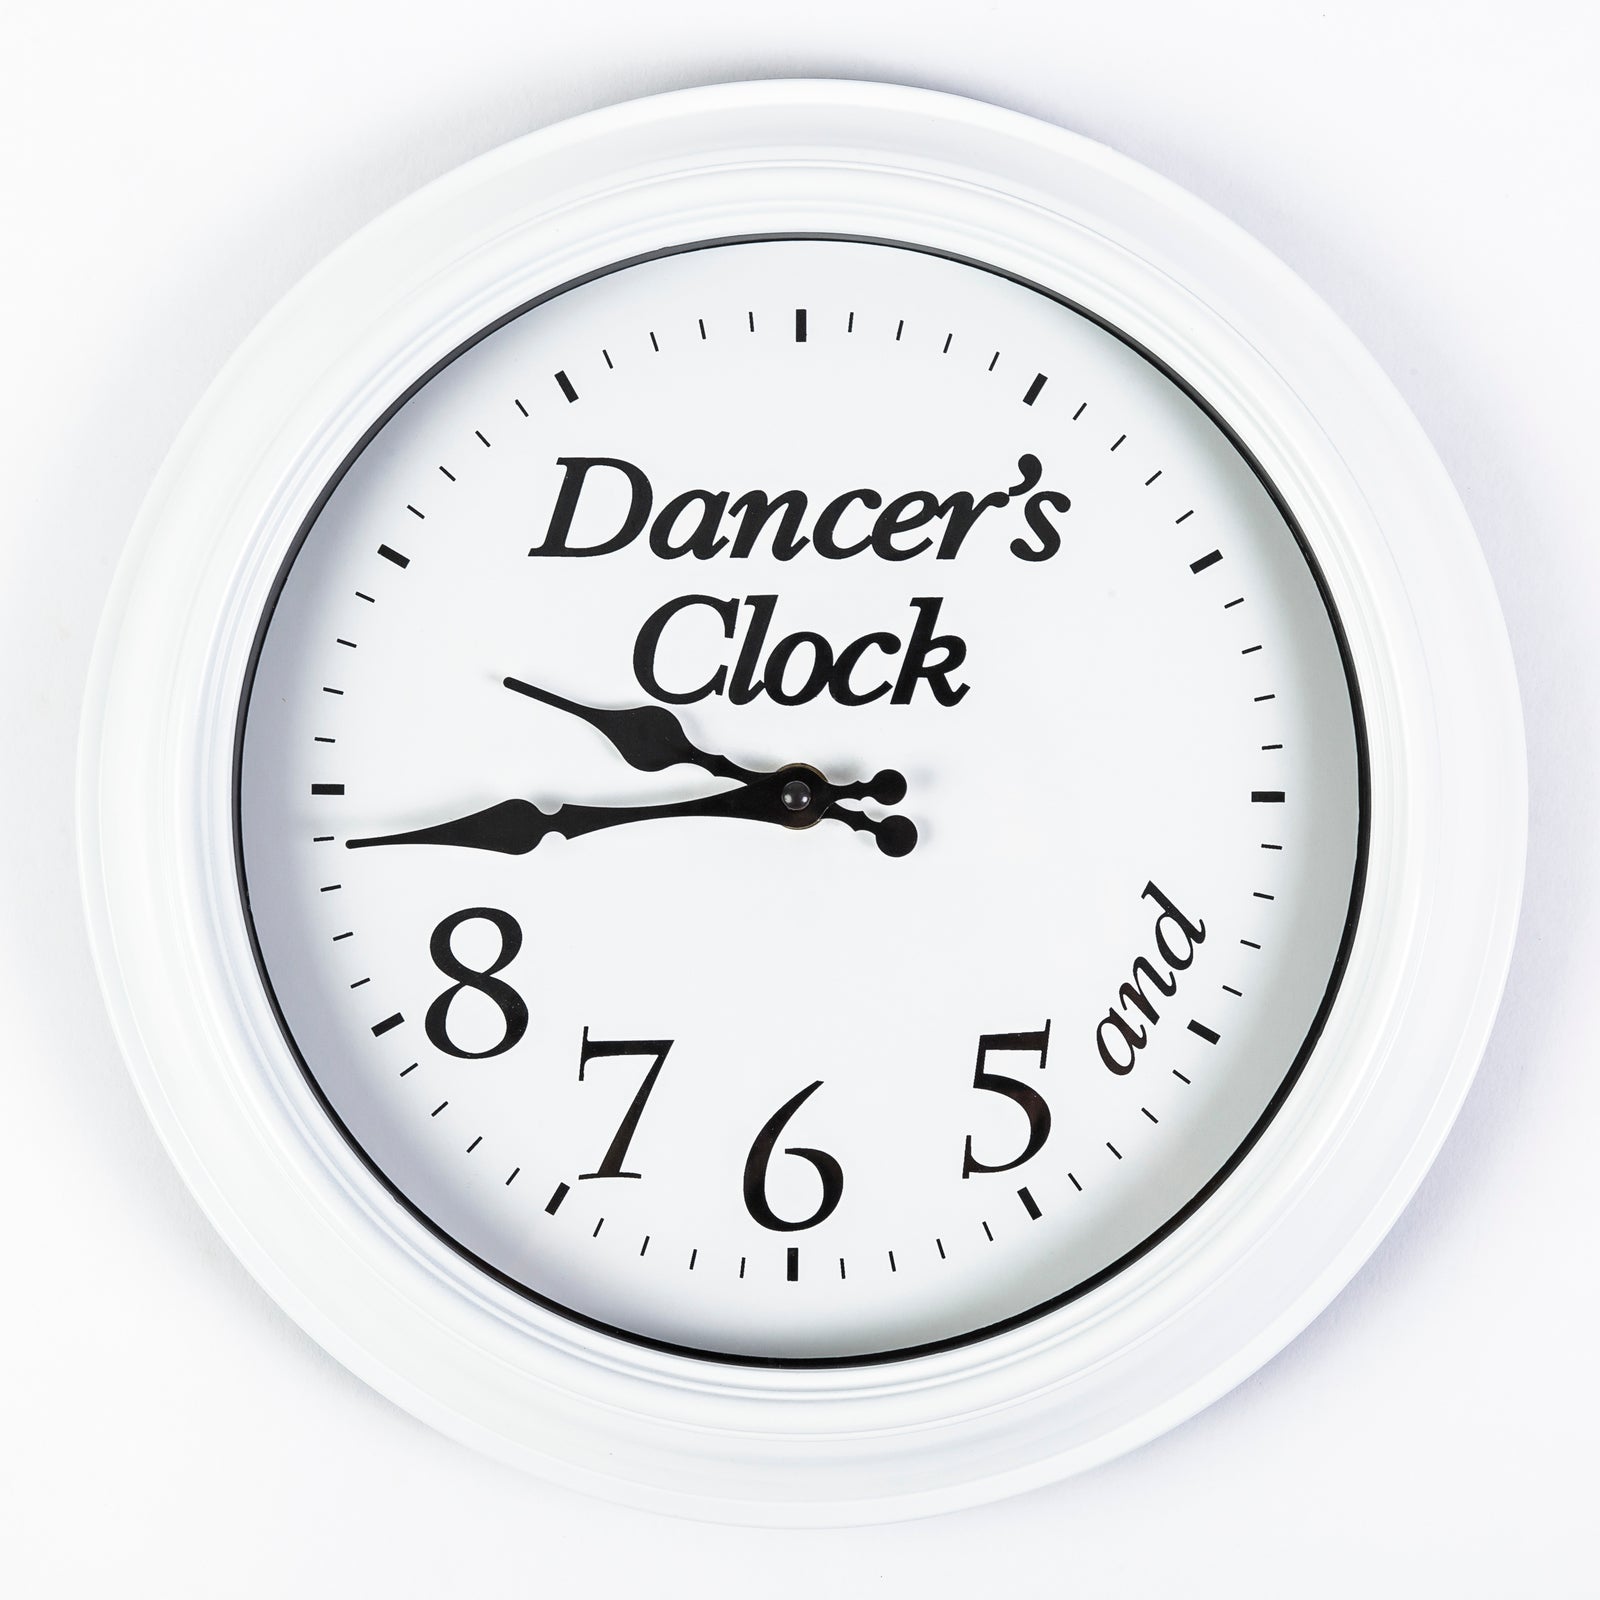 Dancer's Clock